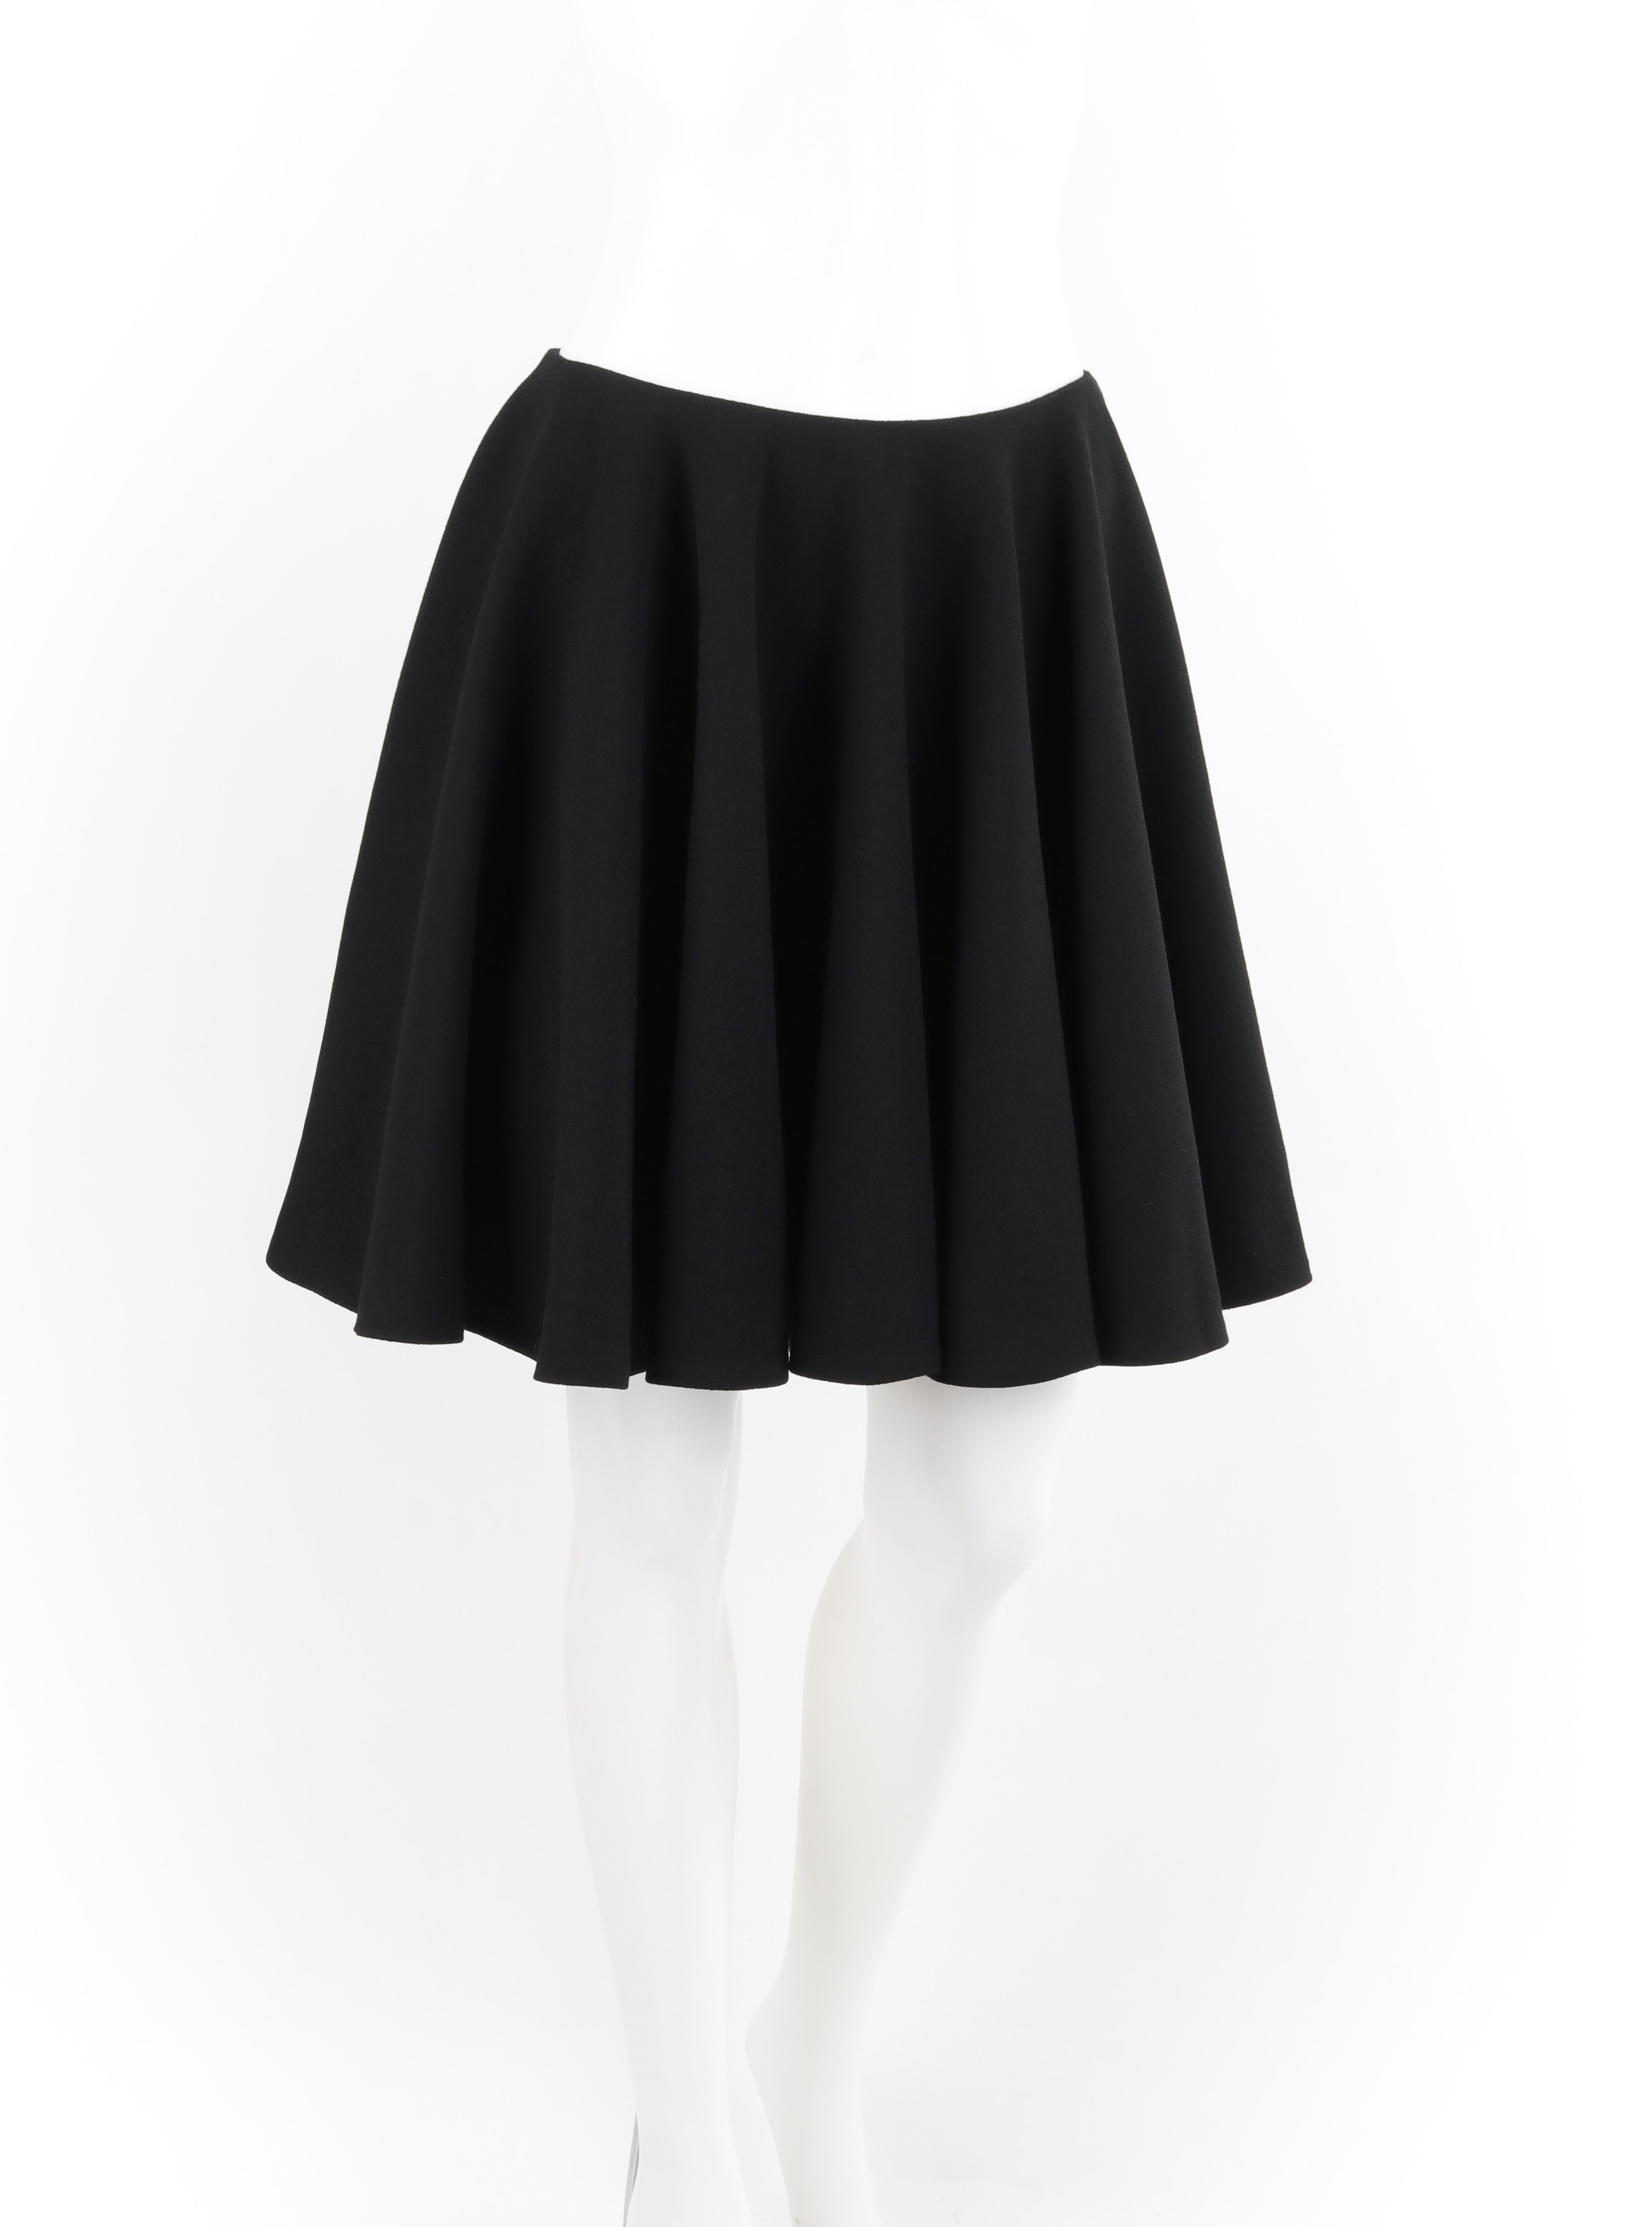 circle skirt types